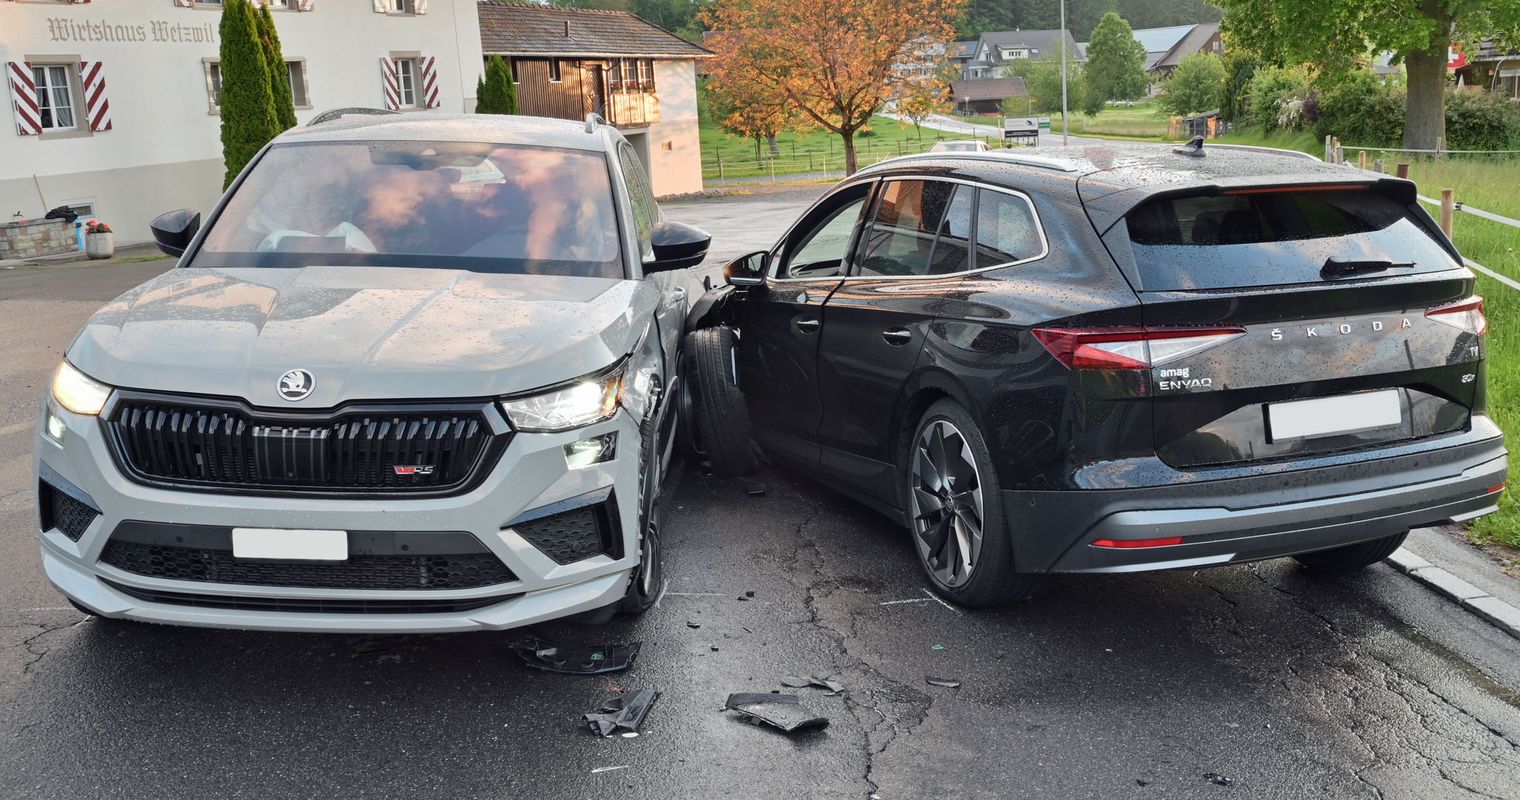 Zwei Autos prallen ineinander – Mega-Sachschaden